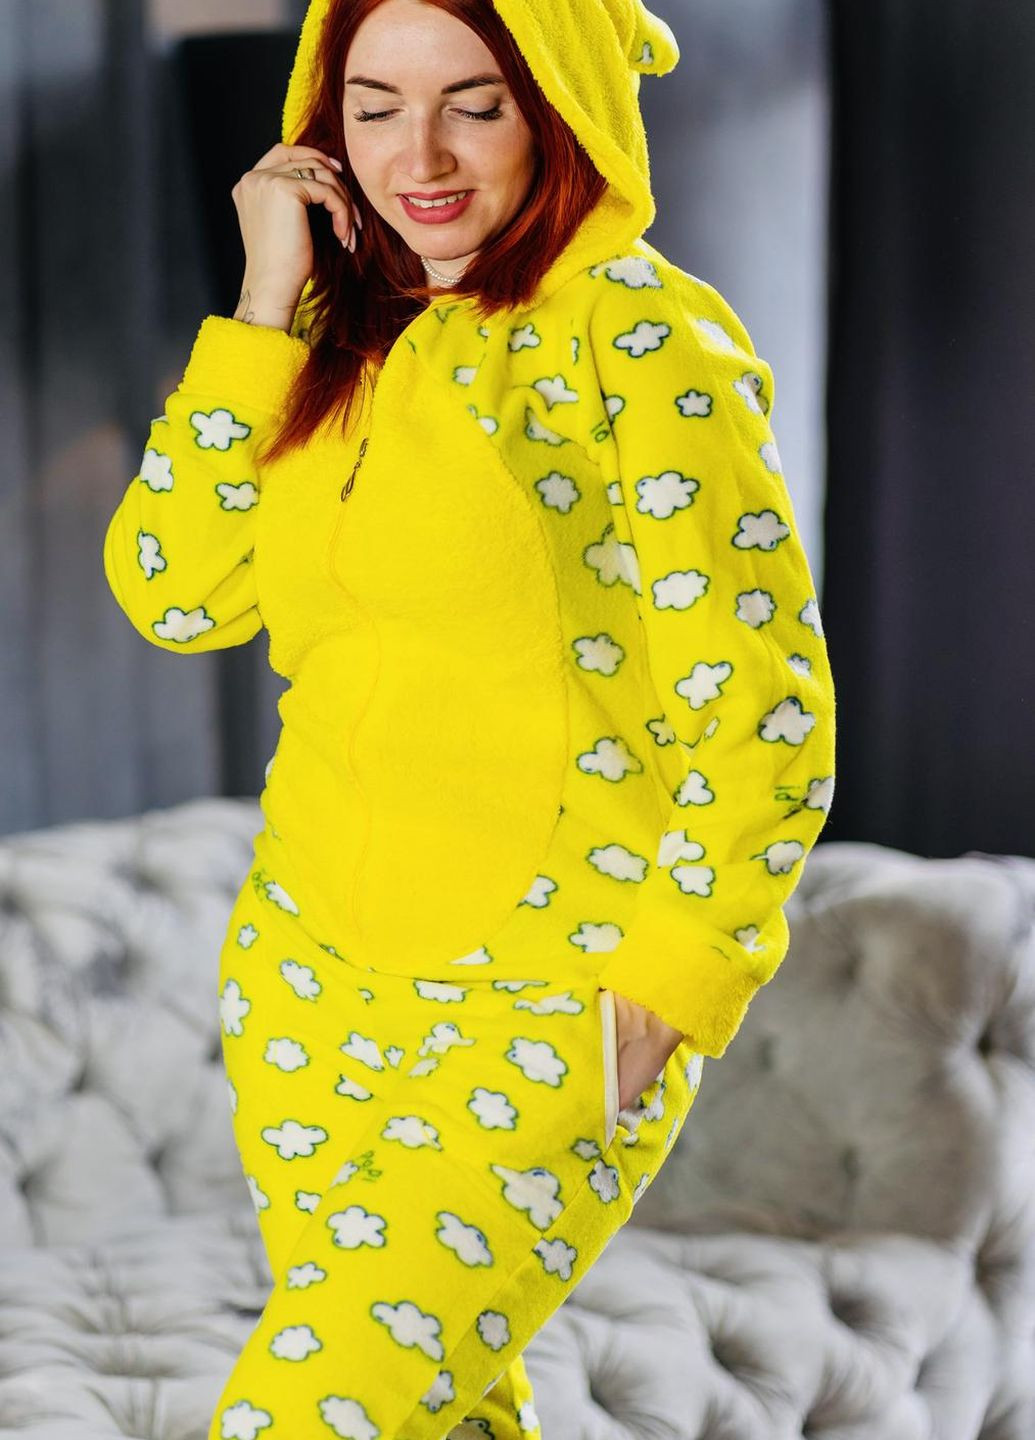 Желтая зимняя пижама комбинезон Pijamoni Попожама хмарка (комбінезон з карманом на попі, піджамоні) - кигурумі